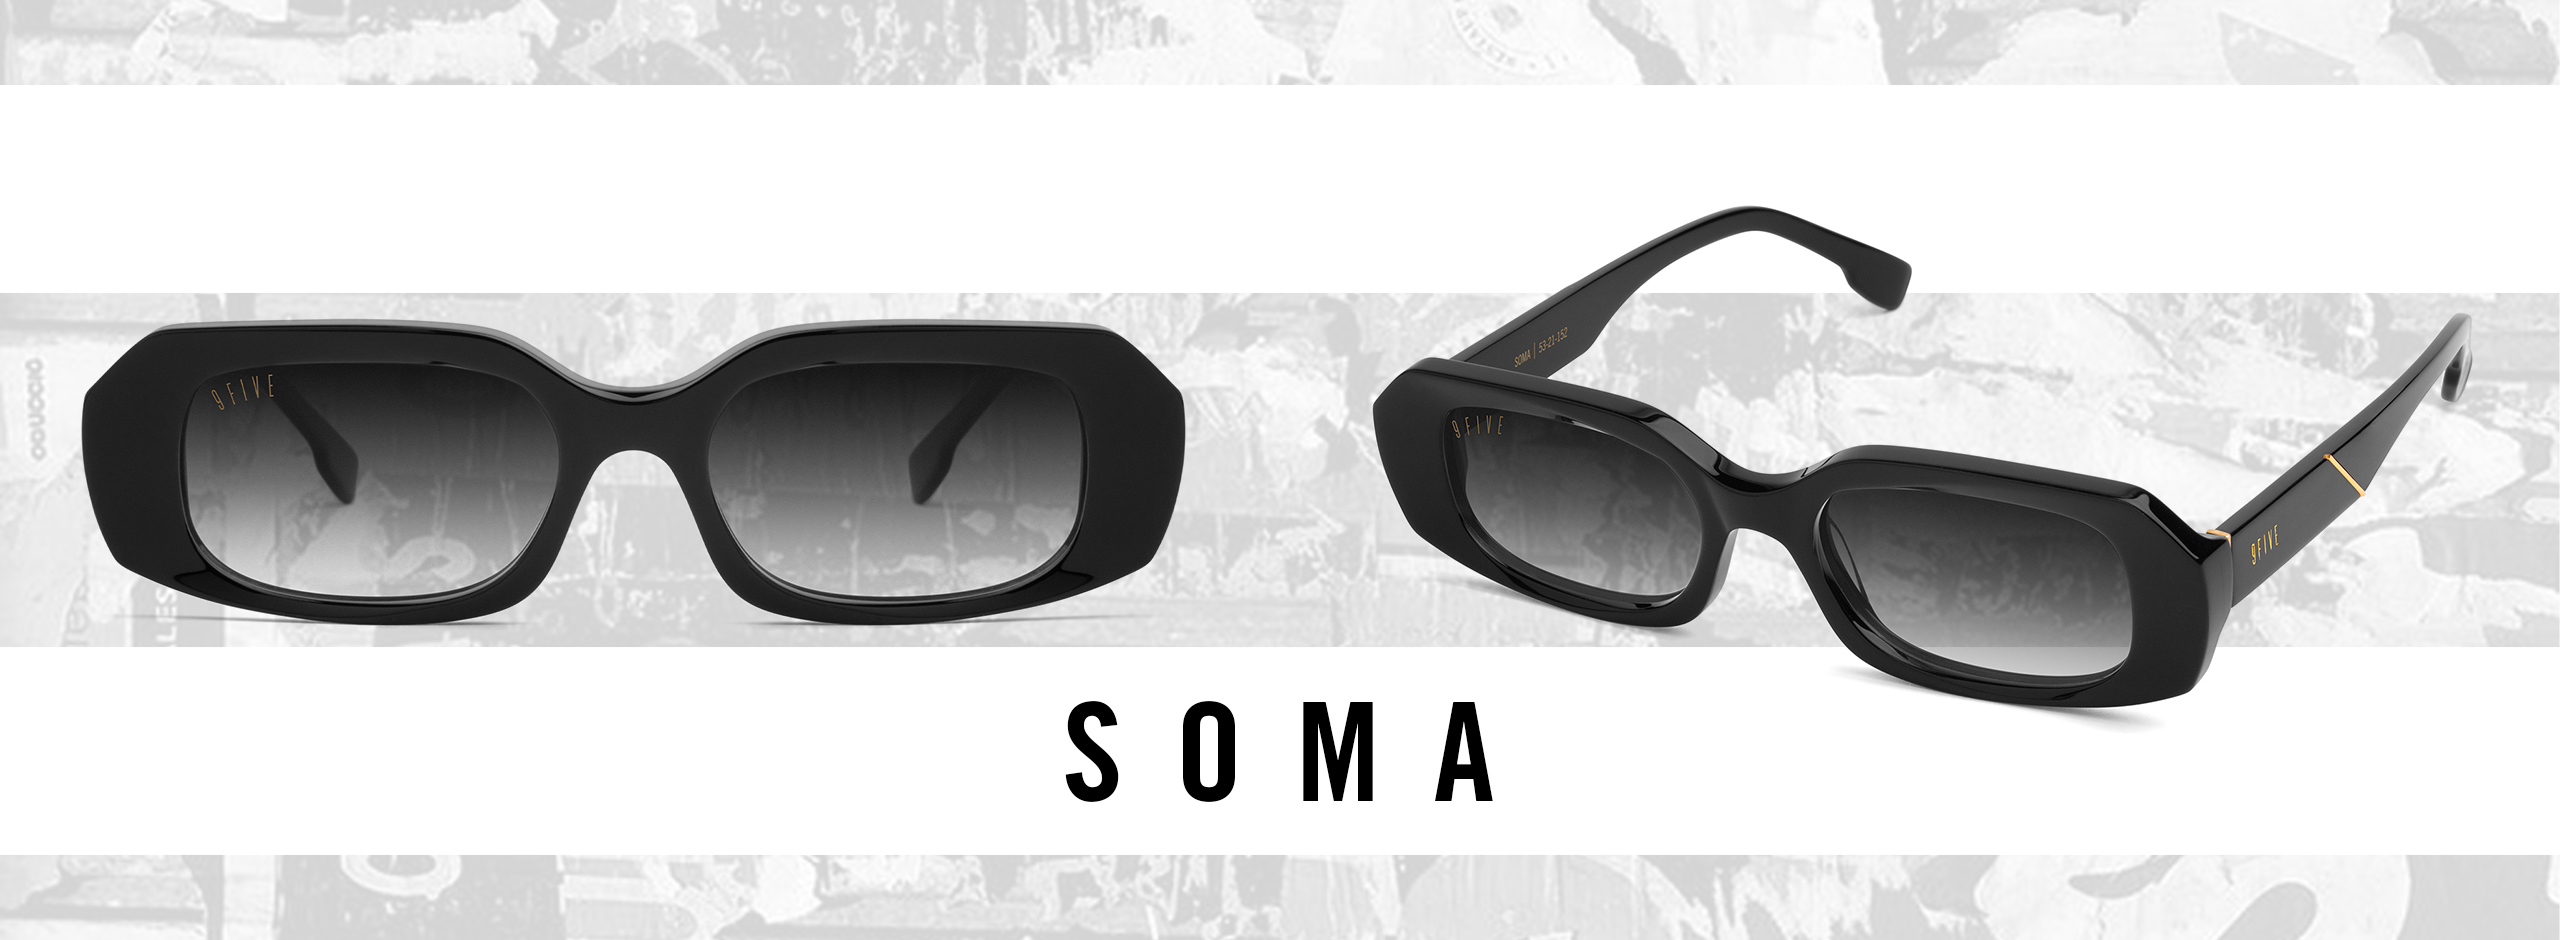 9FIVEの新商品SOMAのサングラス通販はこちらから